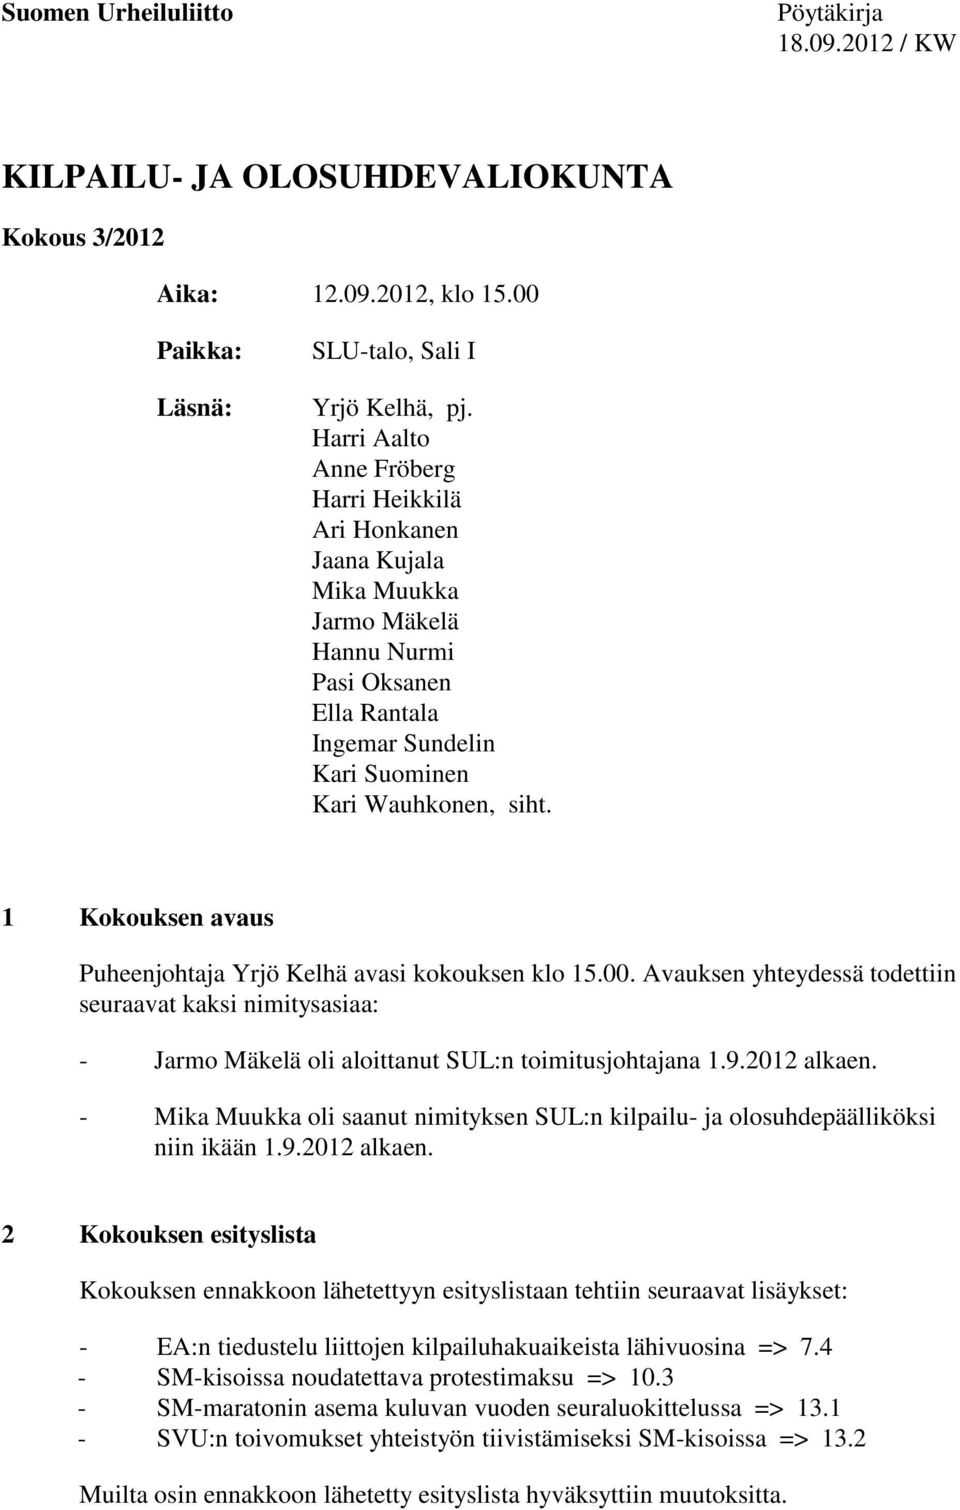 1 Kokouksen avaus Puheenjohtaja Yrjö Kelhä avasi kokouksen klo 15.00. Avauksen yhteydessä todettiin seuraavat kaksi nimitysasiaa: - Jarmo Mäkelä oli aloittanut SUL:n toimitusjohtajana 1.9.2012 alkaen.